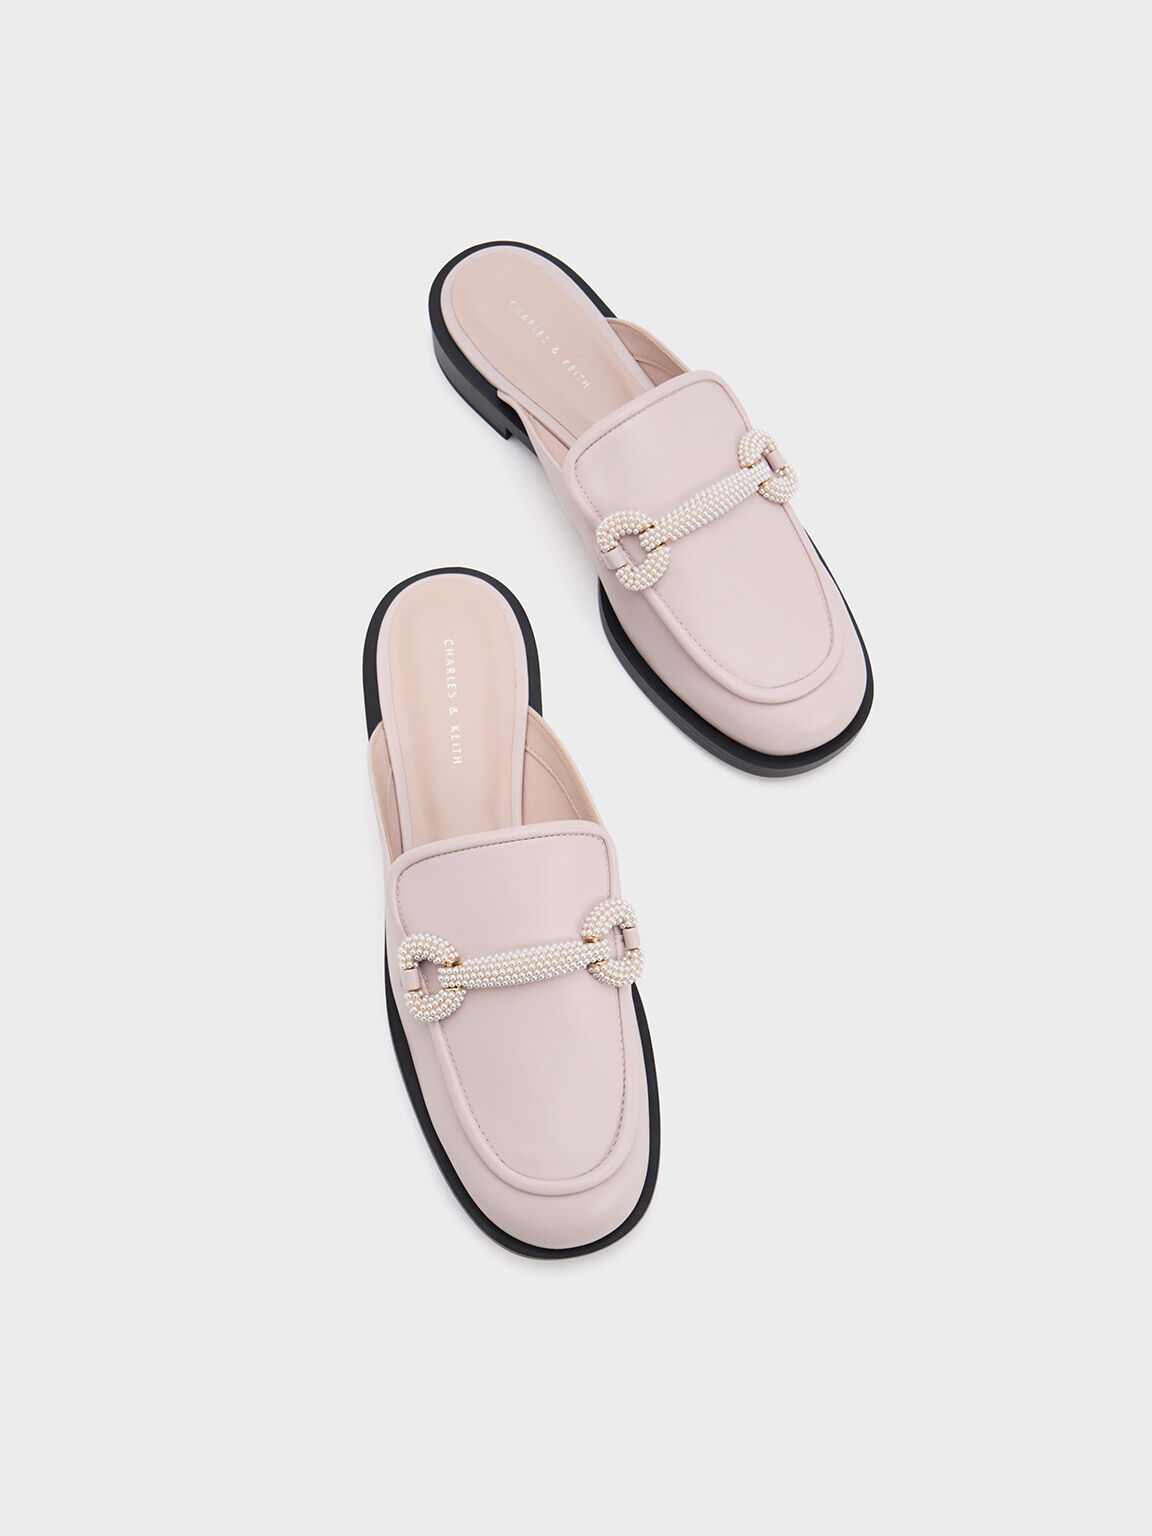 珍珠馬銜釦樂福懶人鞋, 嫩粉色, hi-res